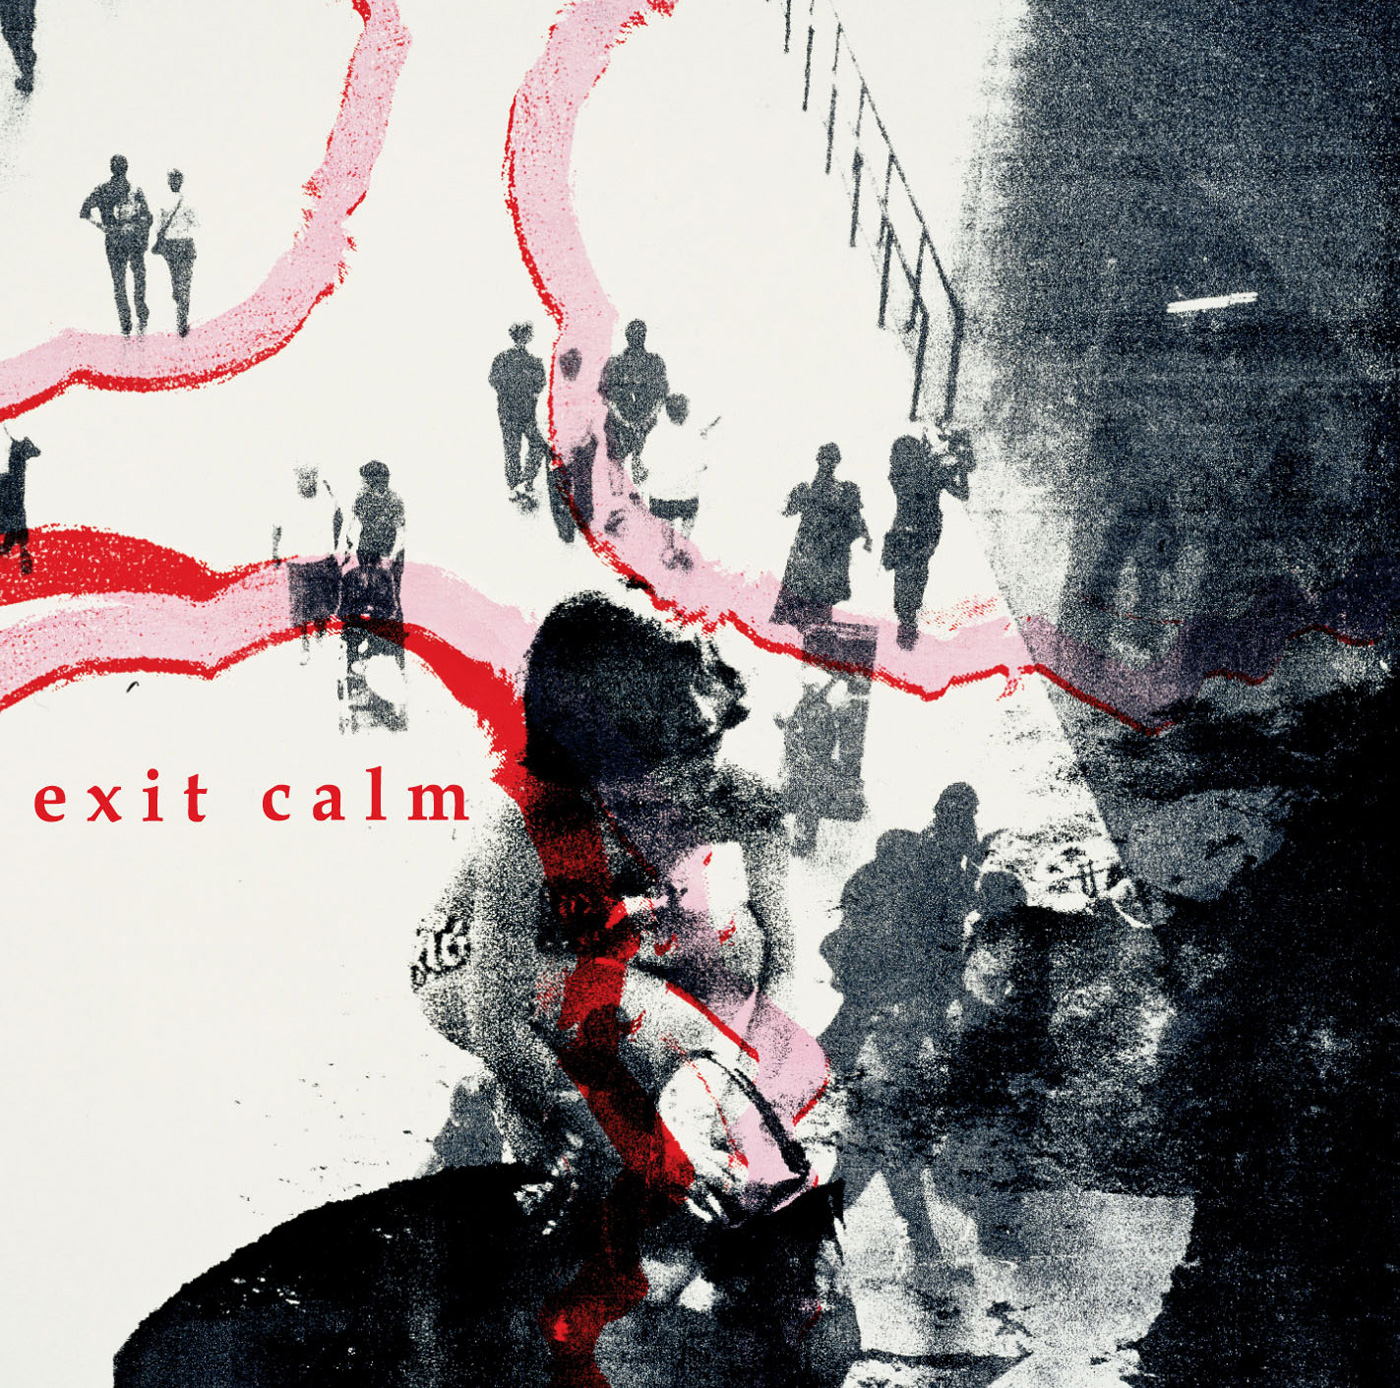 Exit Calm - Exit Calm